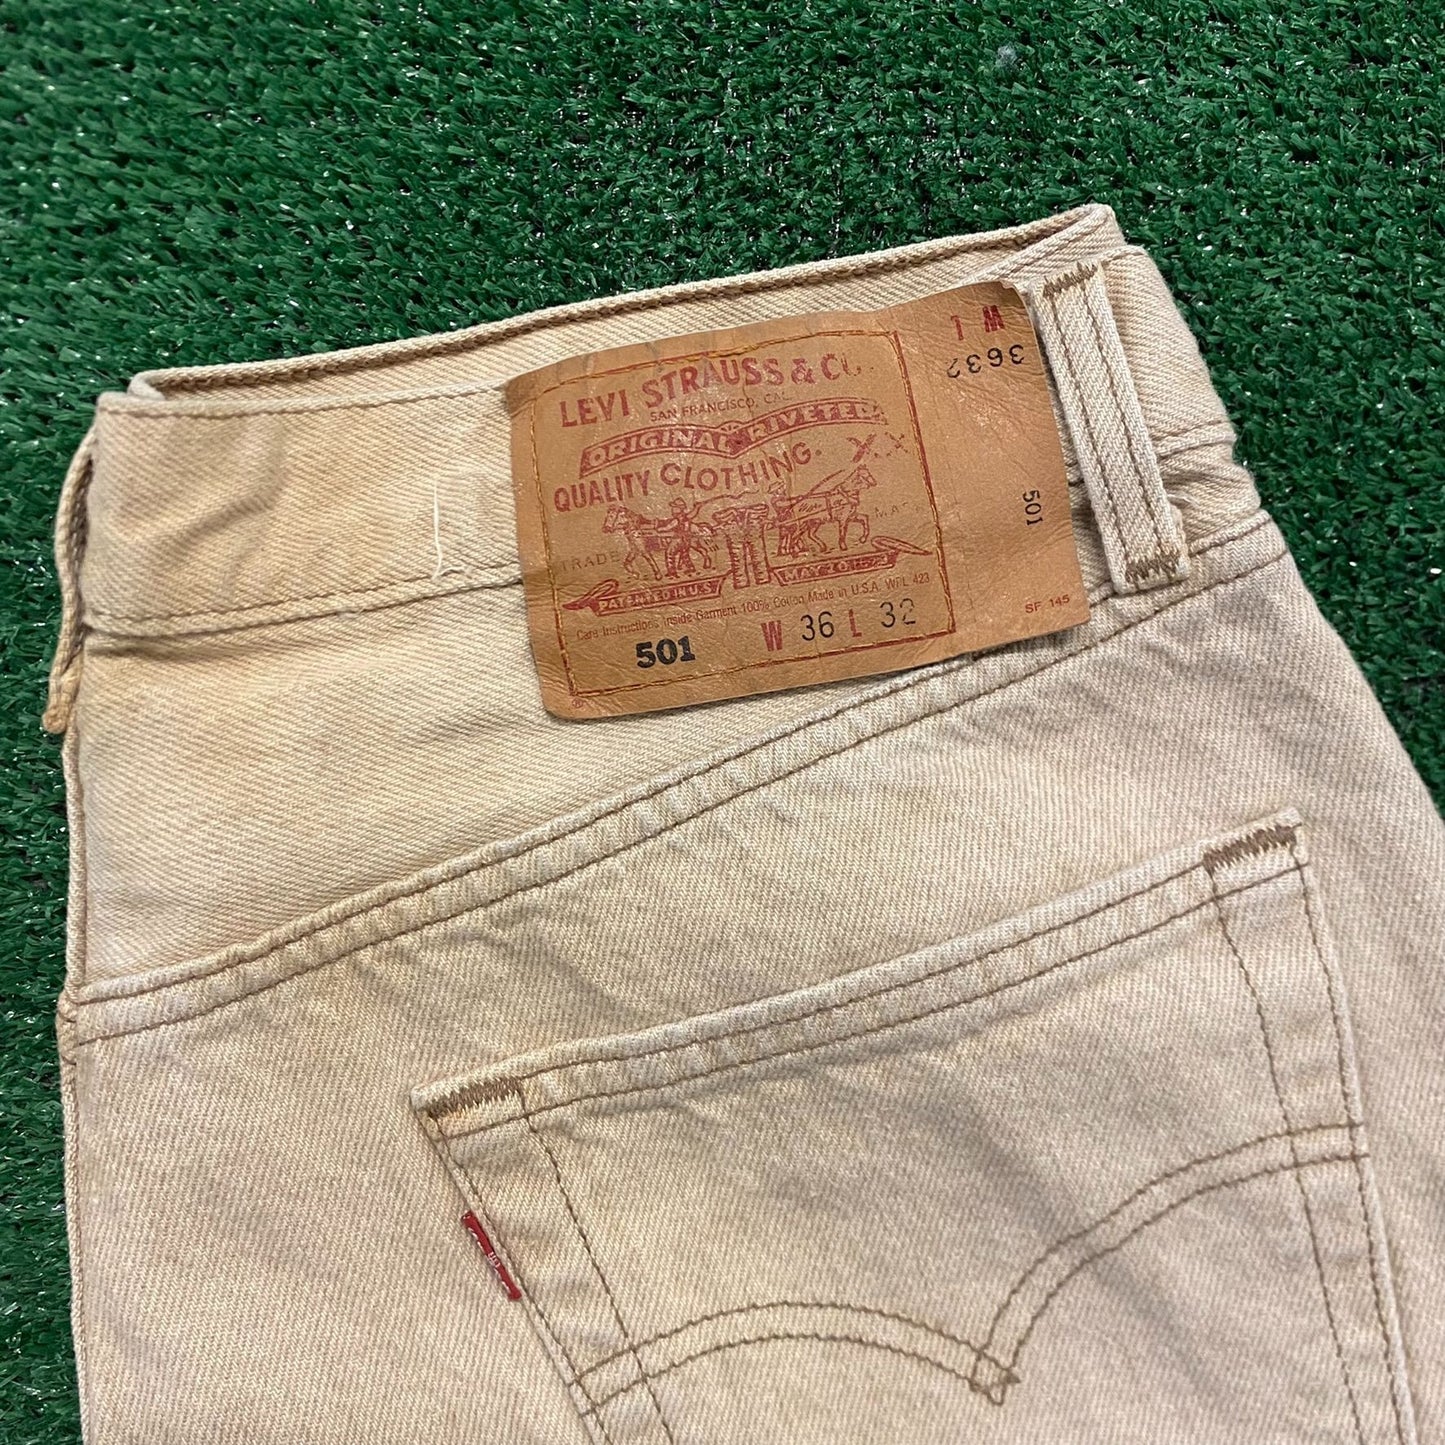 Levi's 501 Straight Fit Vintage 90s Denim Jeans Work Pants